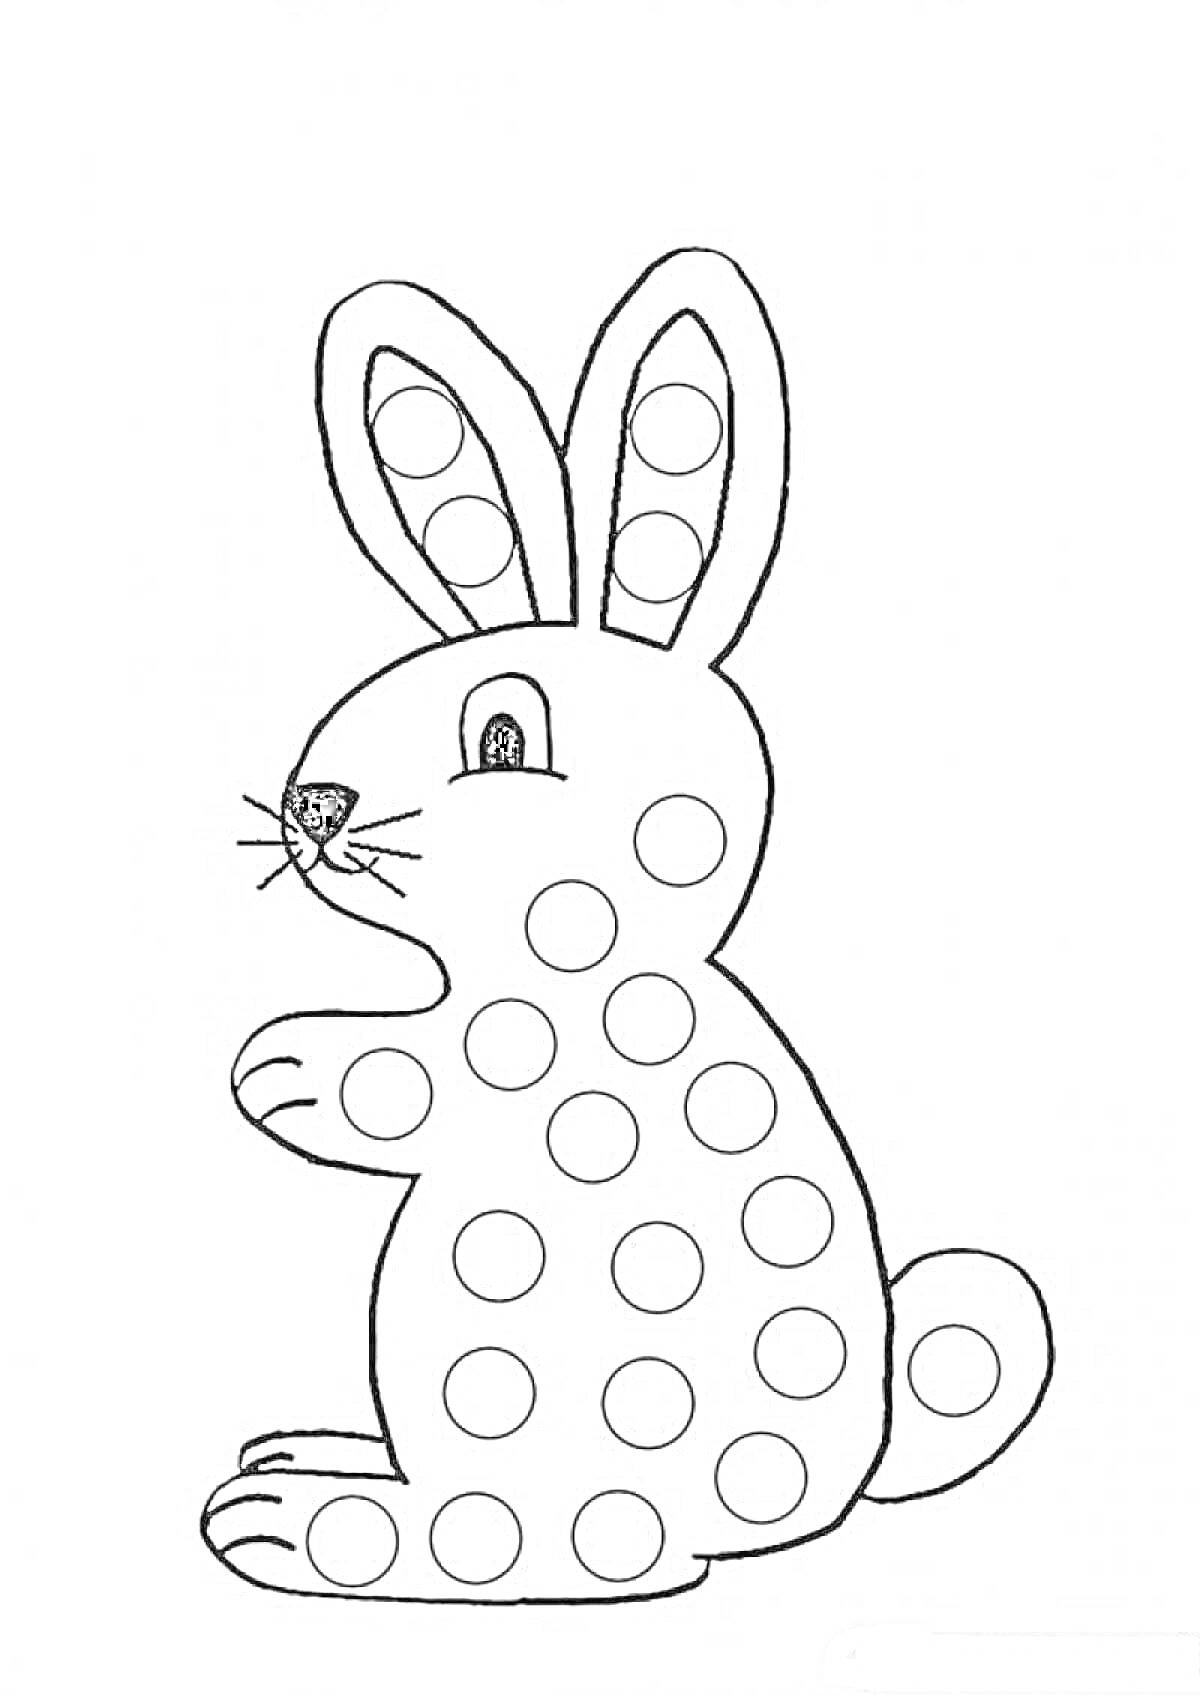 Раскраска Шаблон для пальчиков - кролик с точками